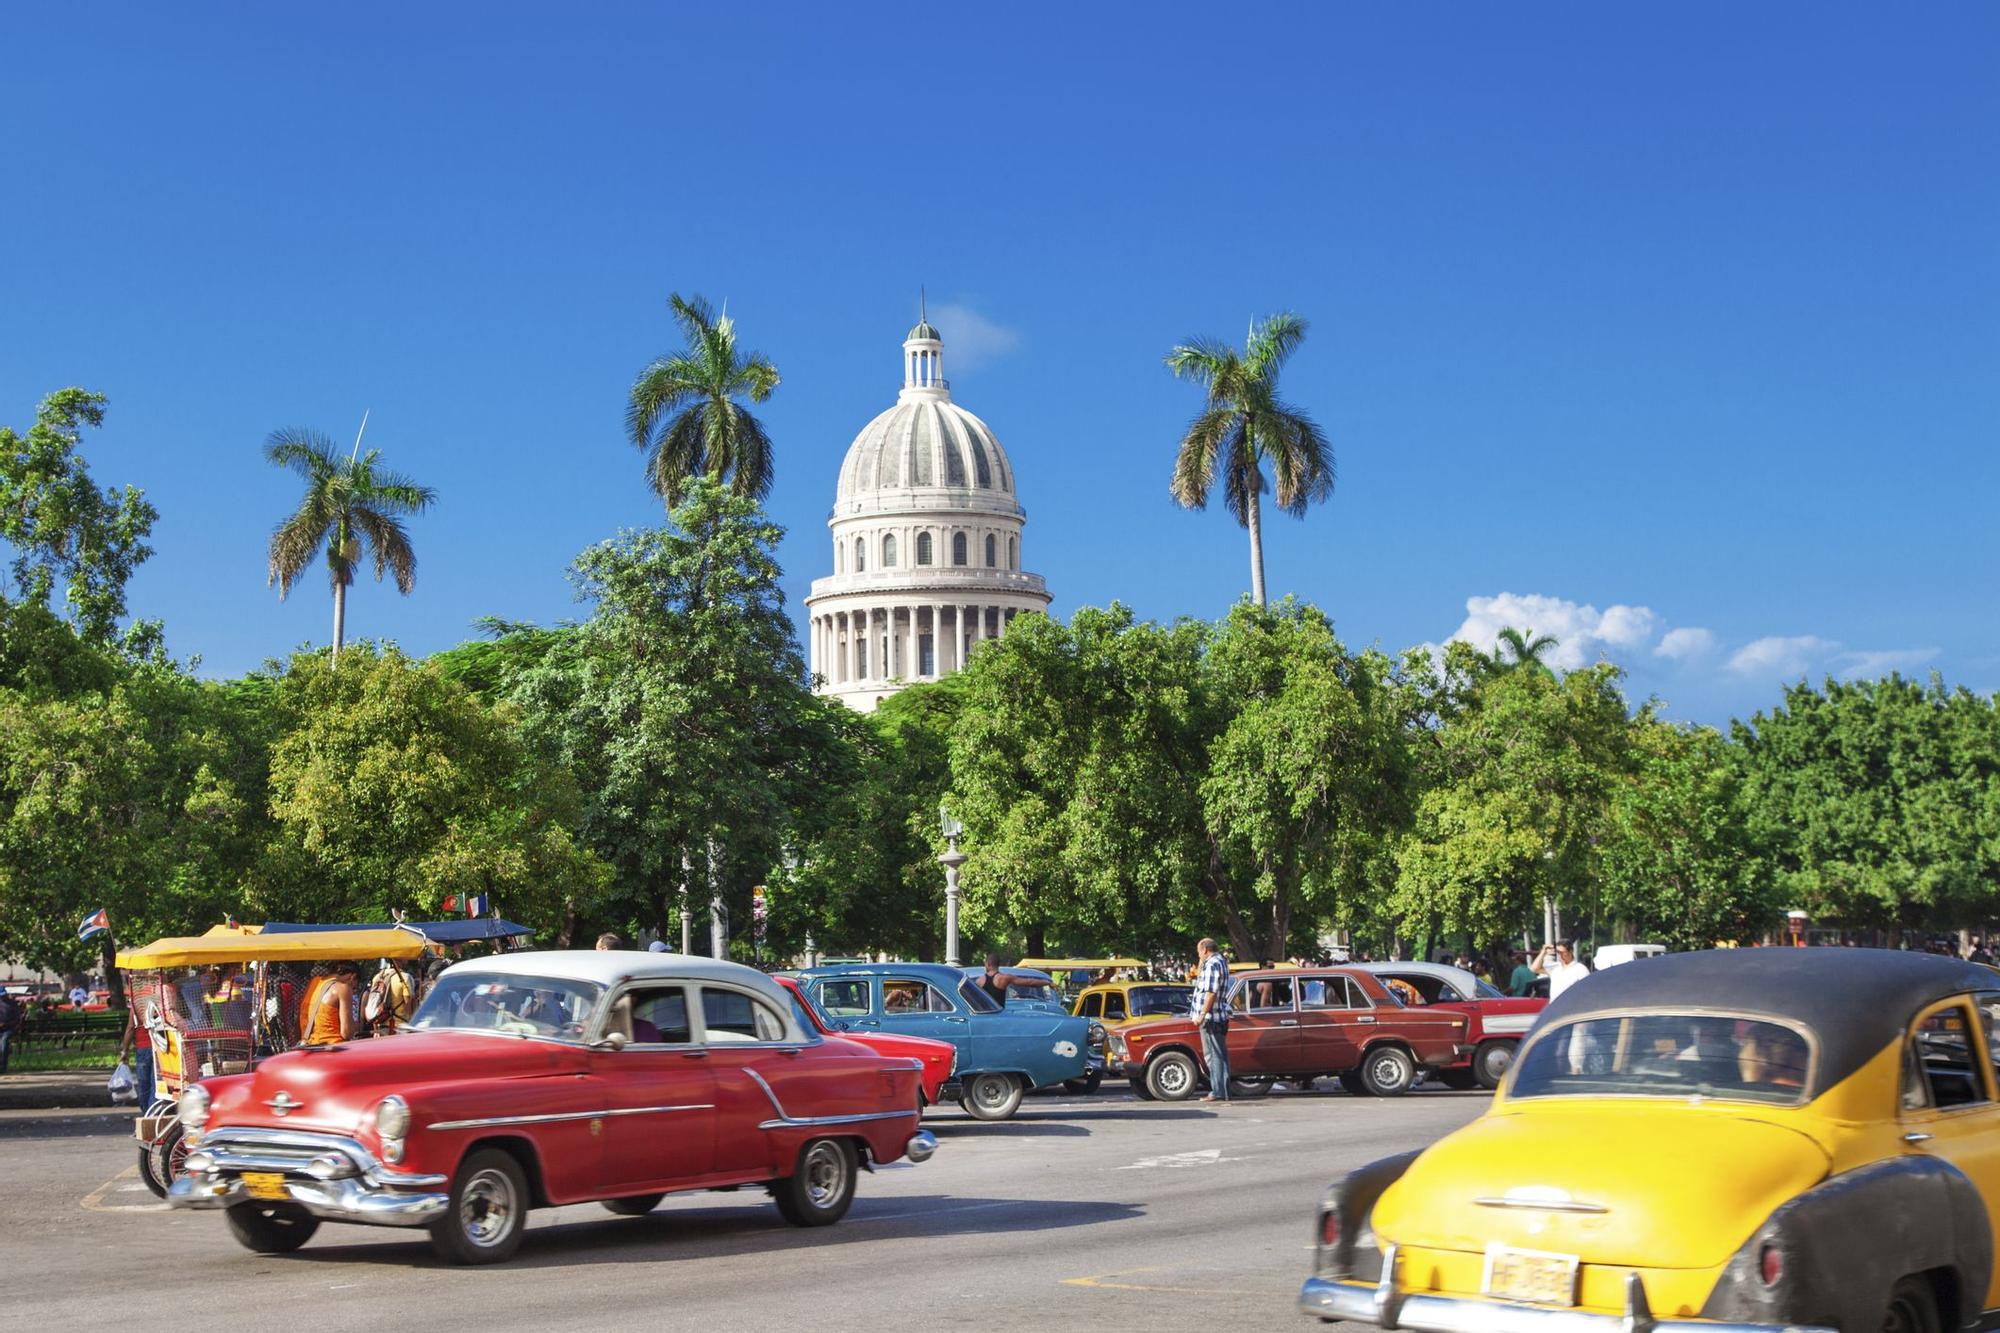 Descubre la Habana Vieja, una de las partes más antiguas de la ciudad